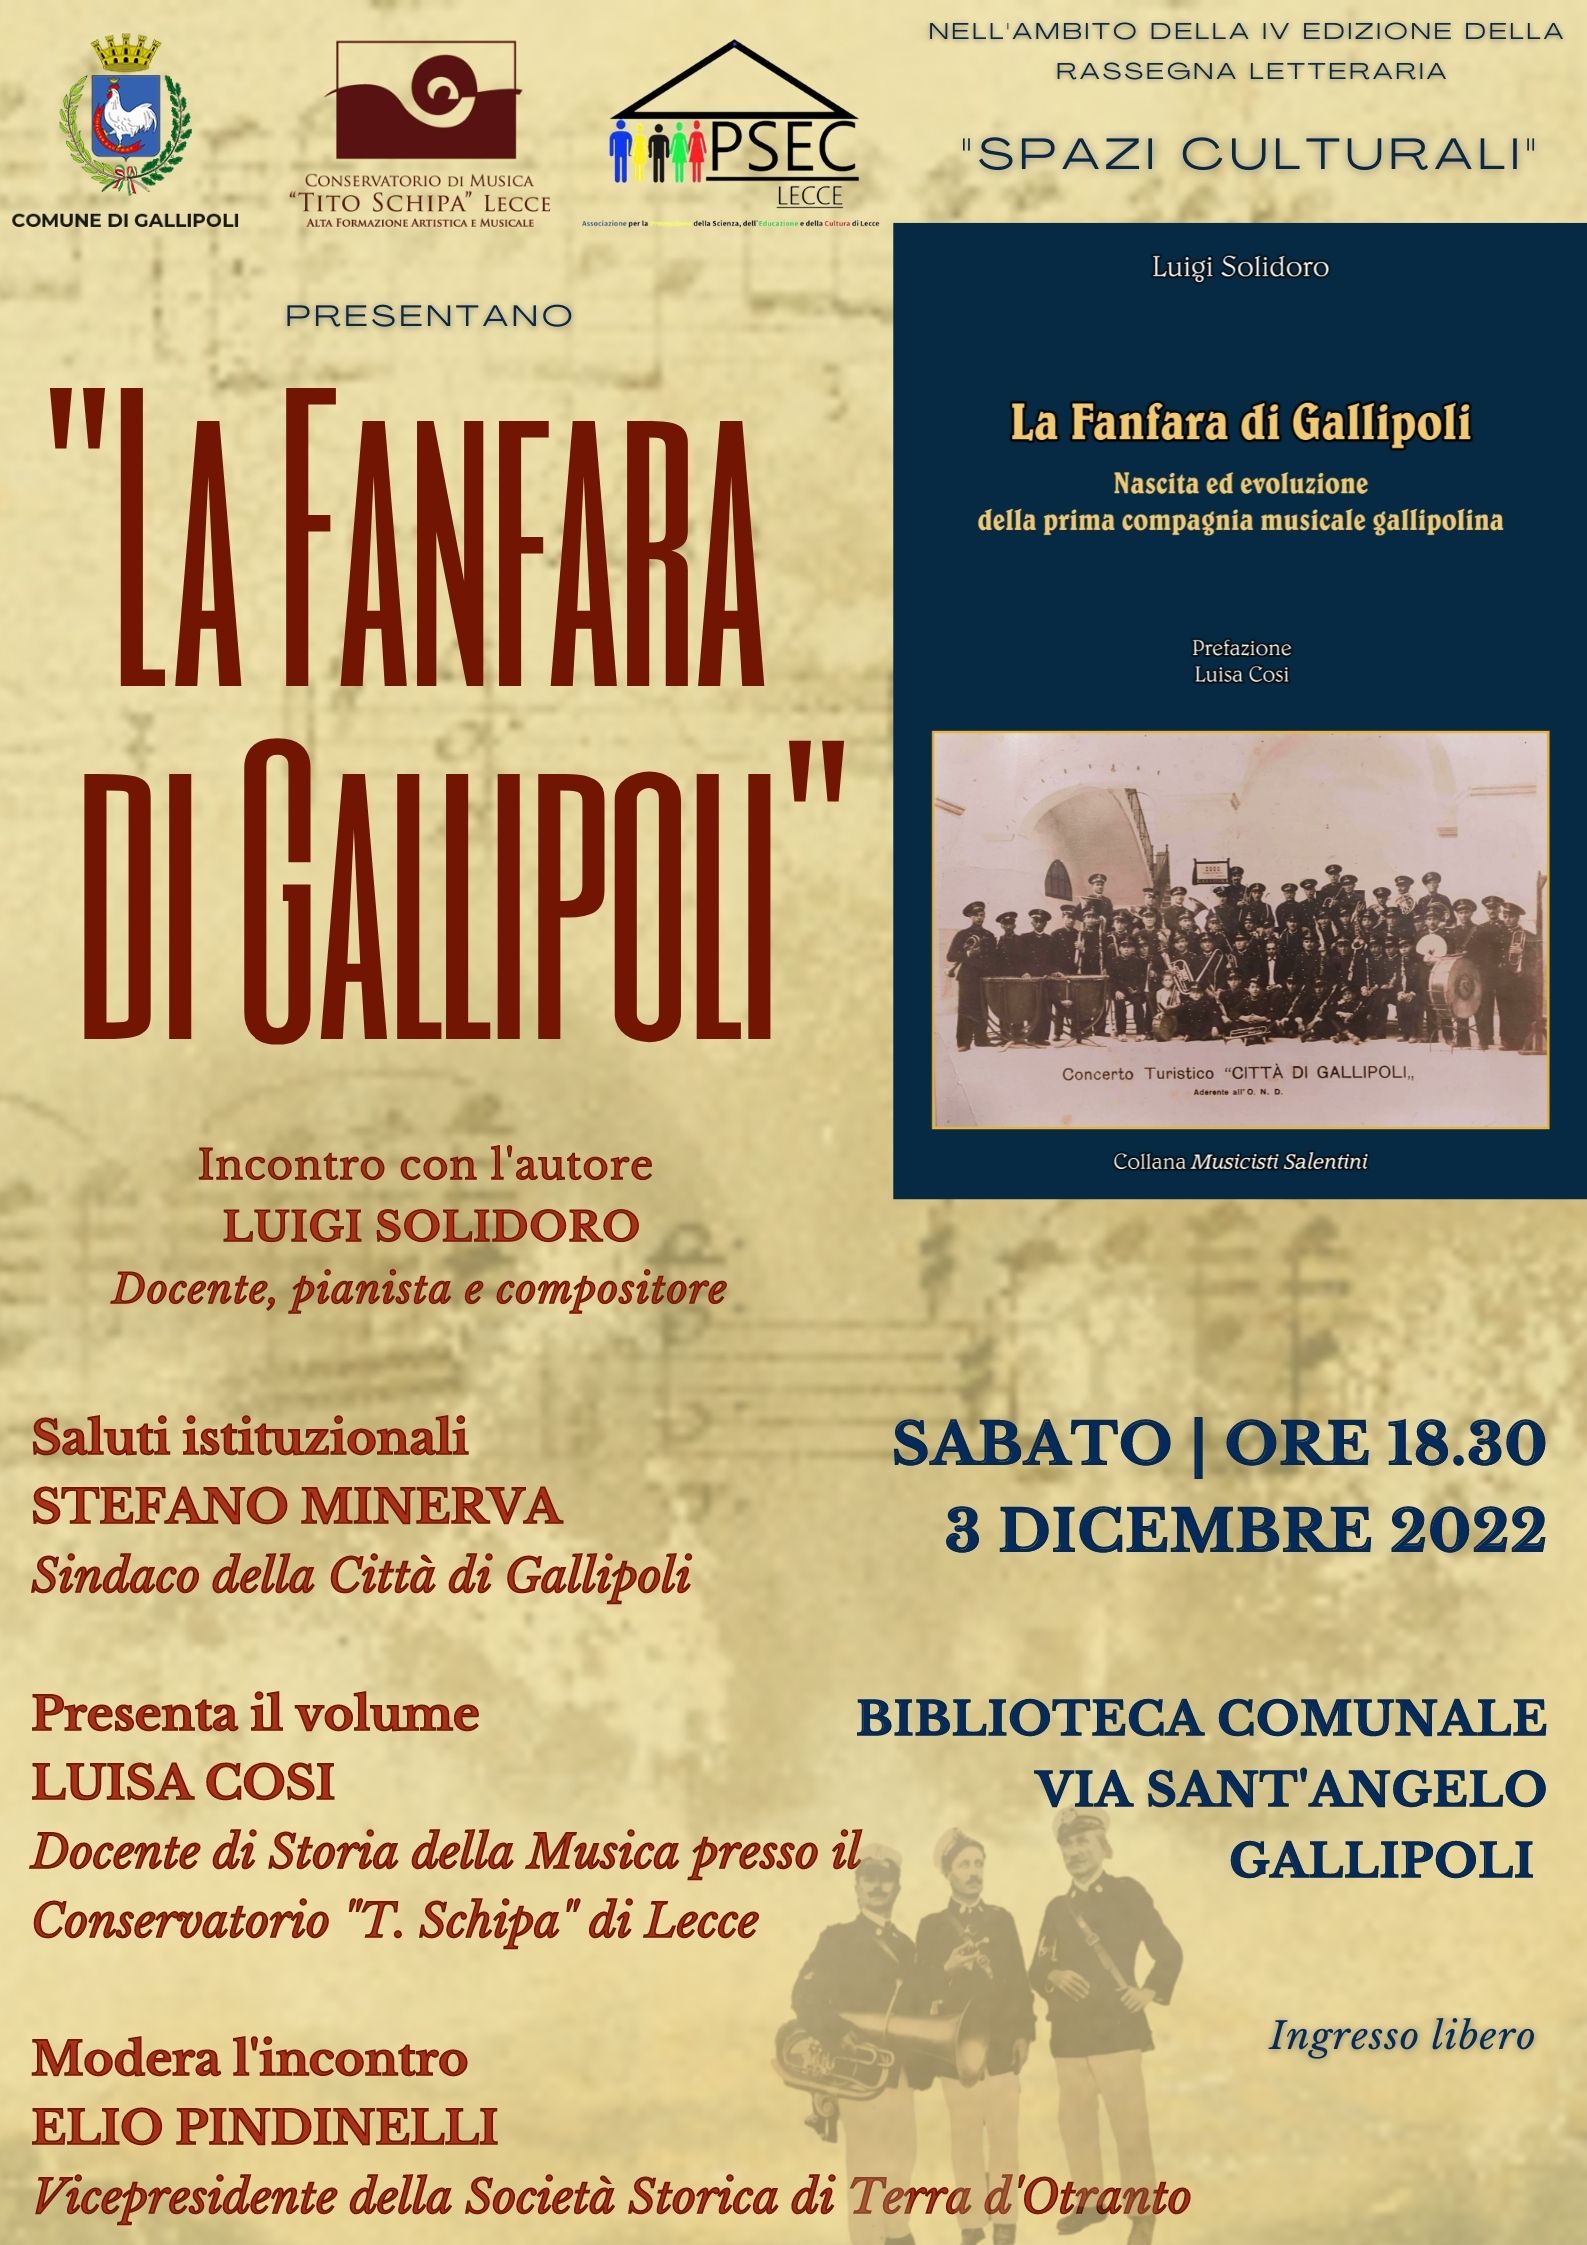 locandina dell'evento in biblioteca comunale a Gallipoli presentazione libro di Luigi Solidoro "La fanfara di Gallipoli"